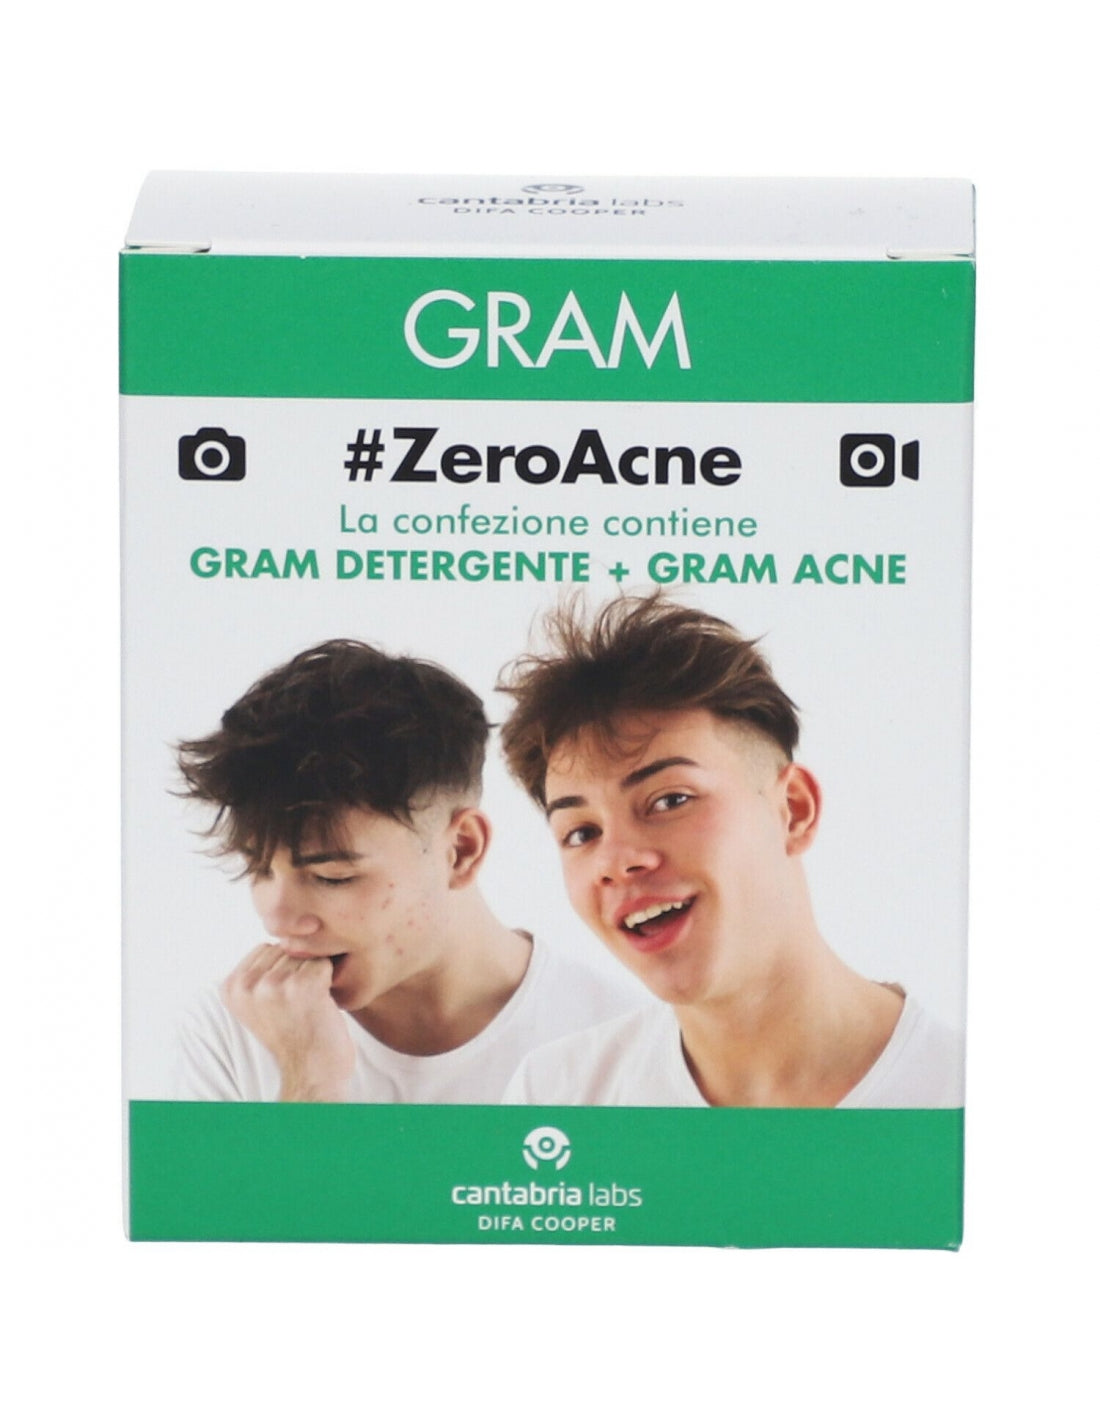 Gram cero acné gramo detergente+gramo de acné